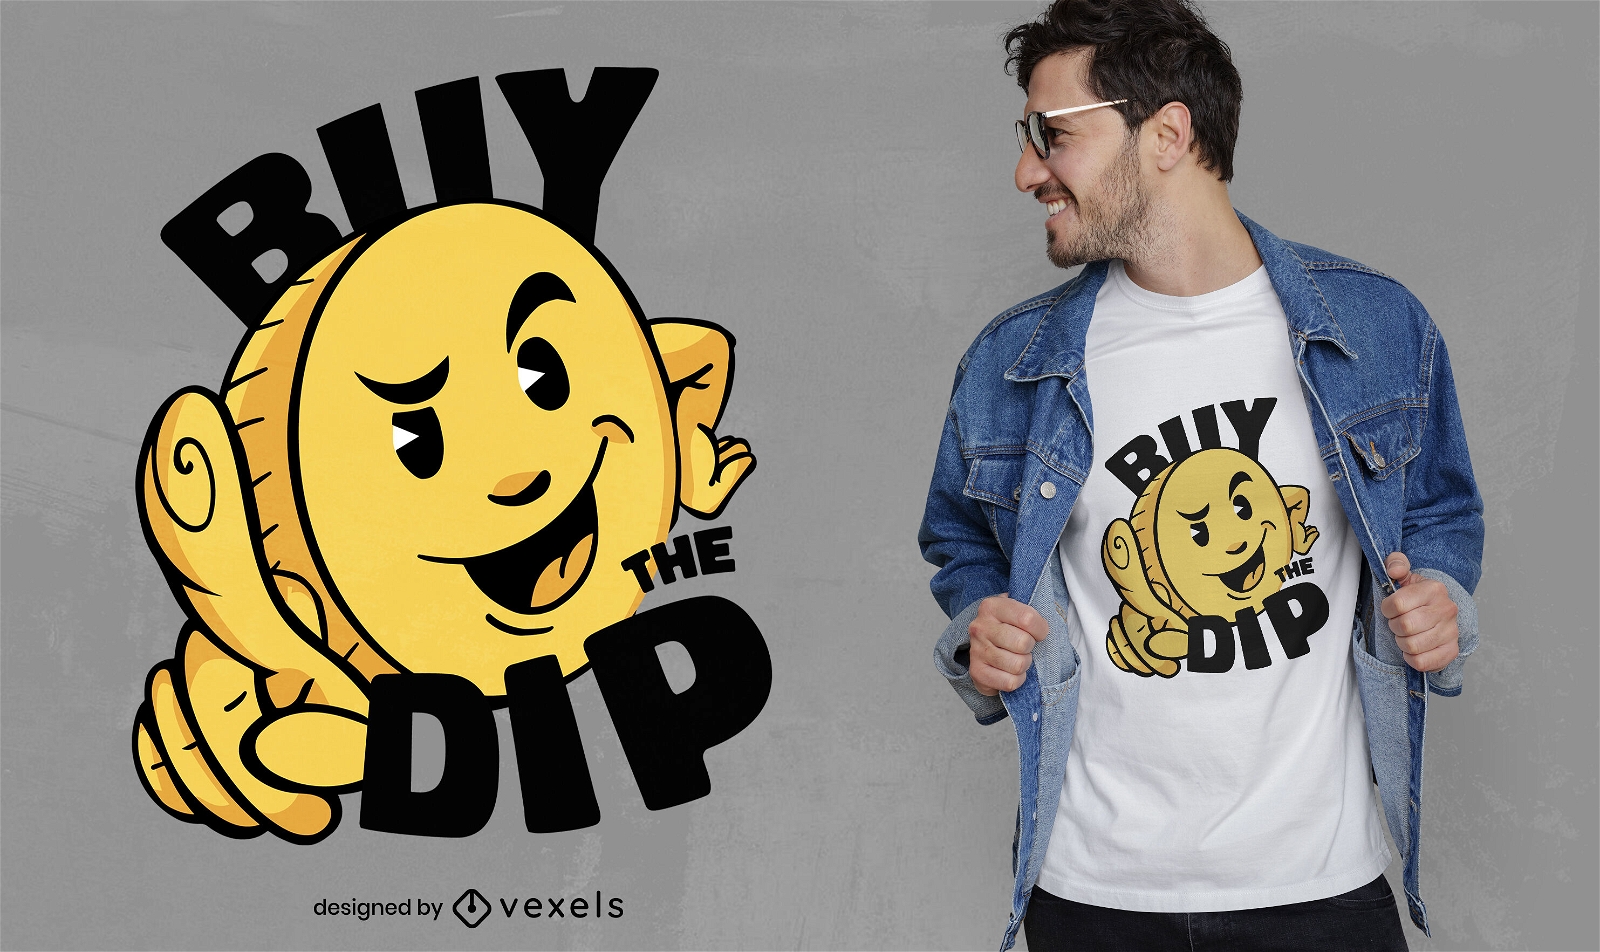 Kaufen Sie das Dip-Kryptow?hrungs-T-Shirt-Design